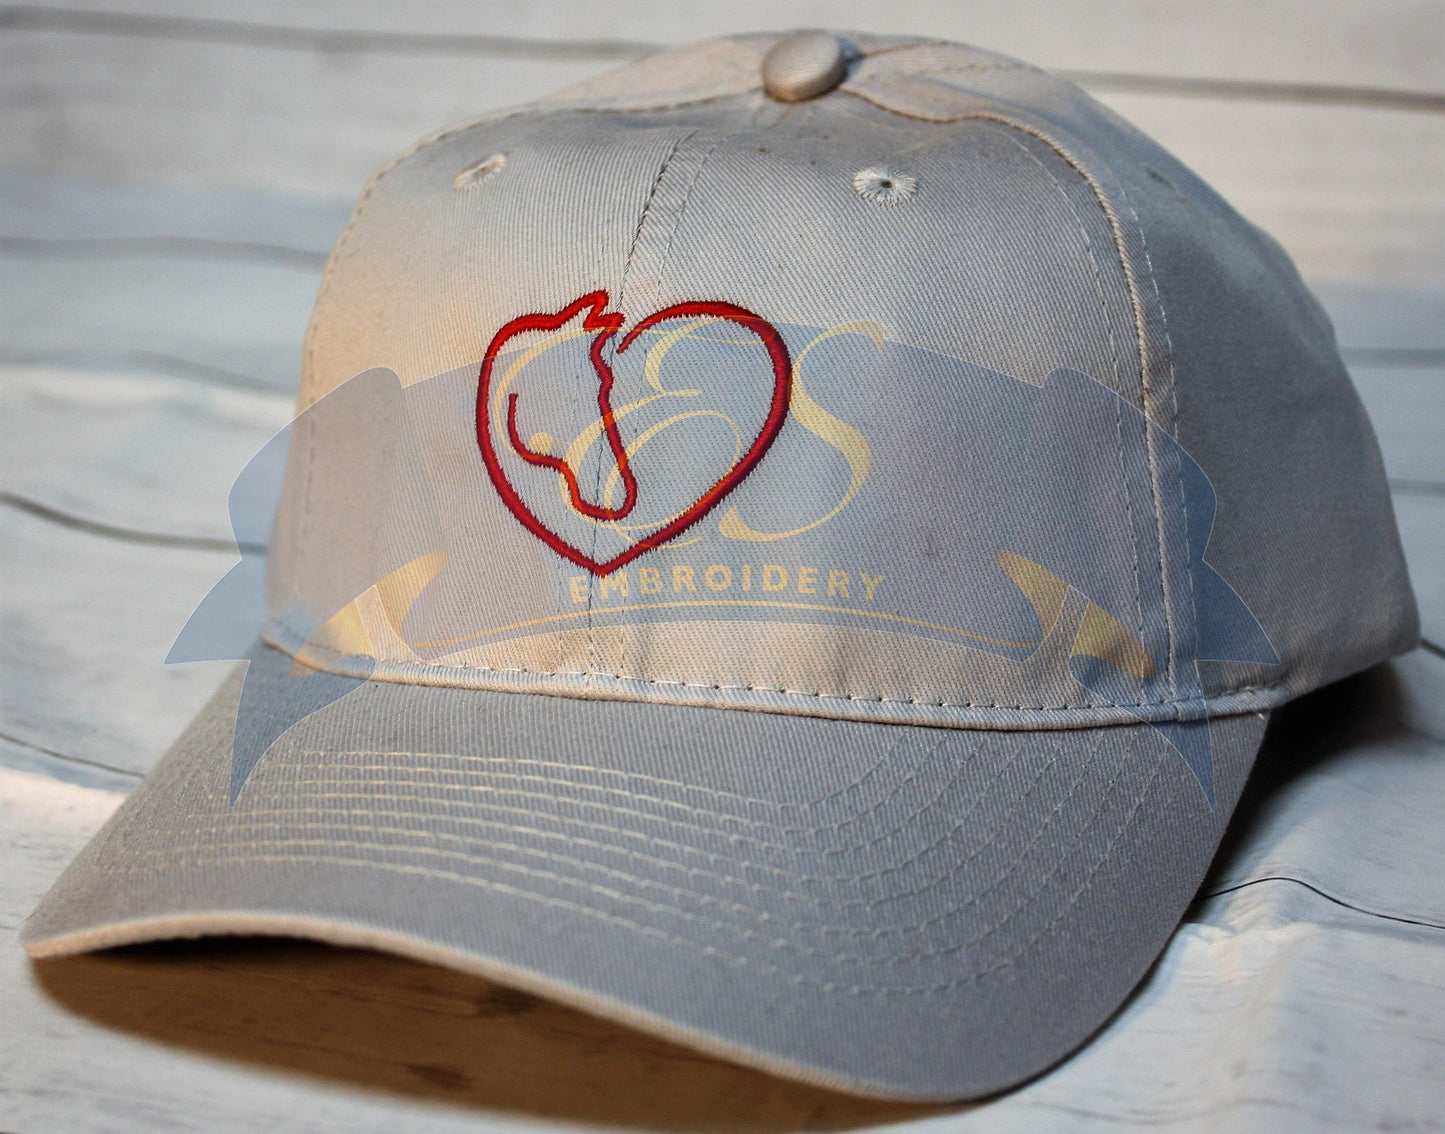 Horse Head in Heart Hat